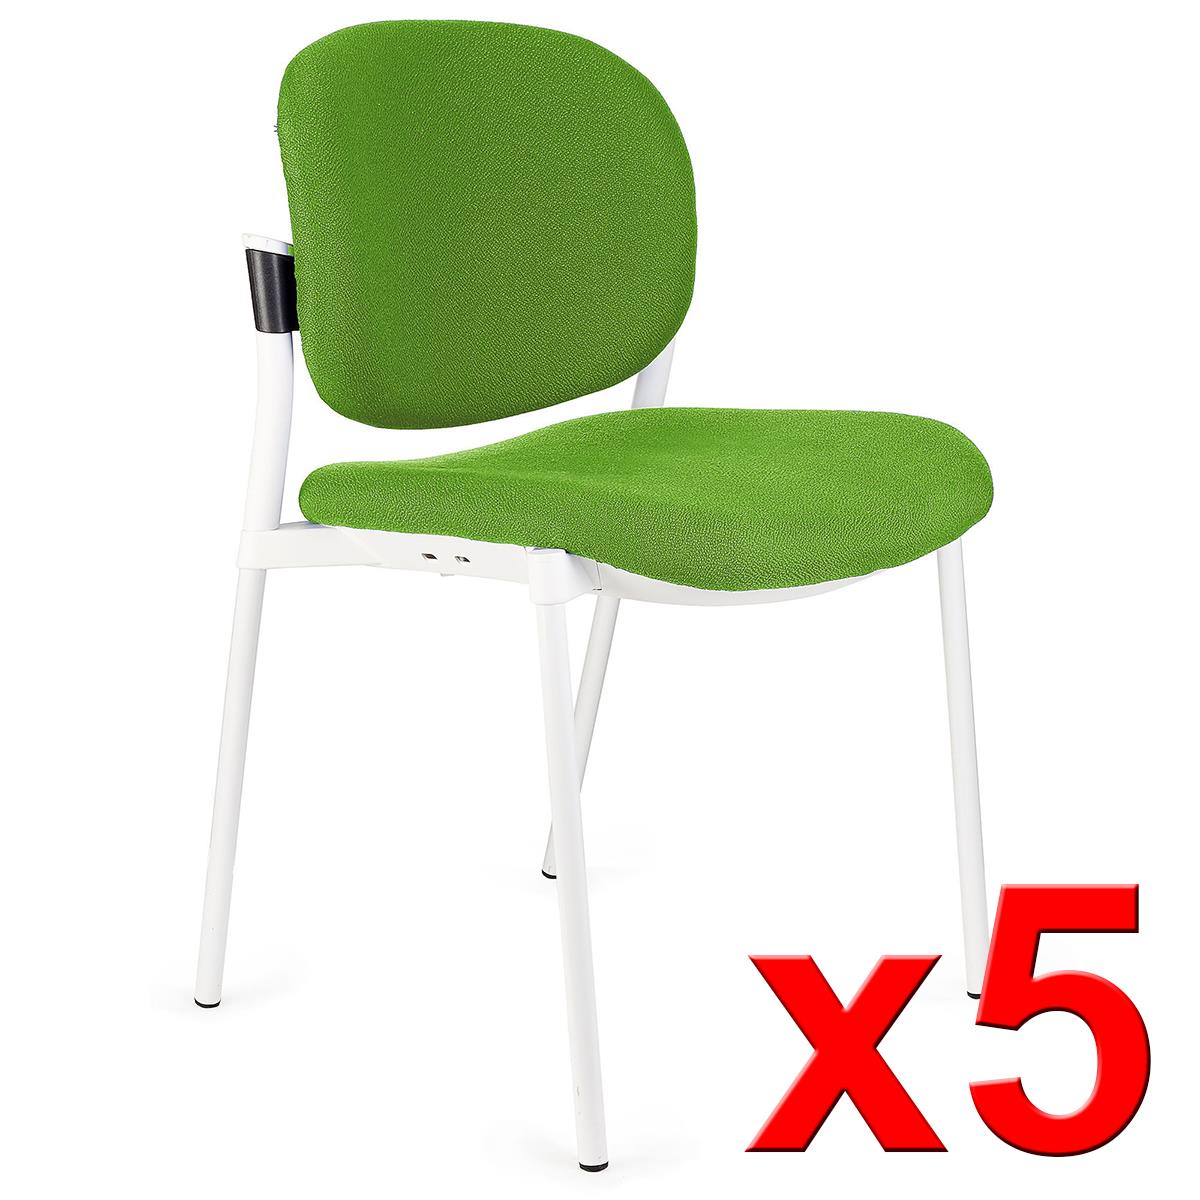 Lote de 5 sillas de Confidente ERIC RESPALDO ACOLCHADO, Cómodas y Prácticas, Apilables, Color Verde Lima